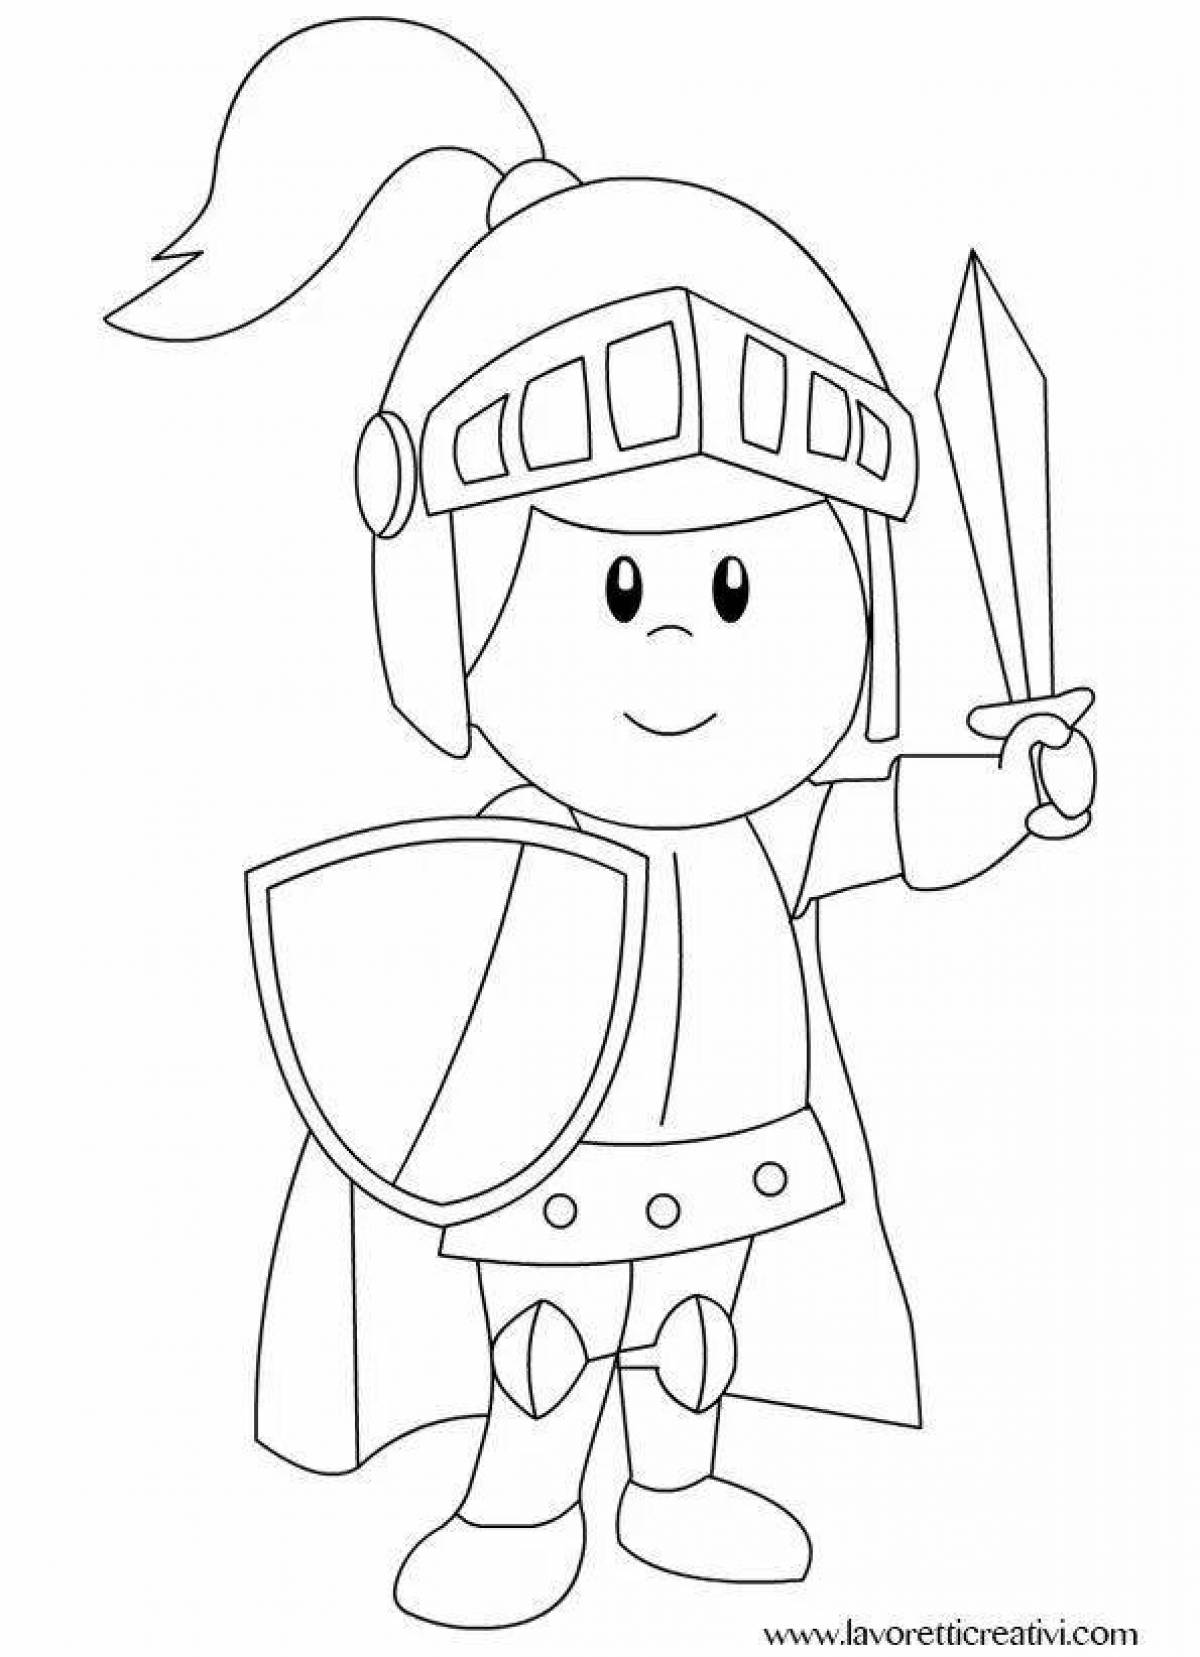 Благородный рыцарь-раскраска для детей